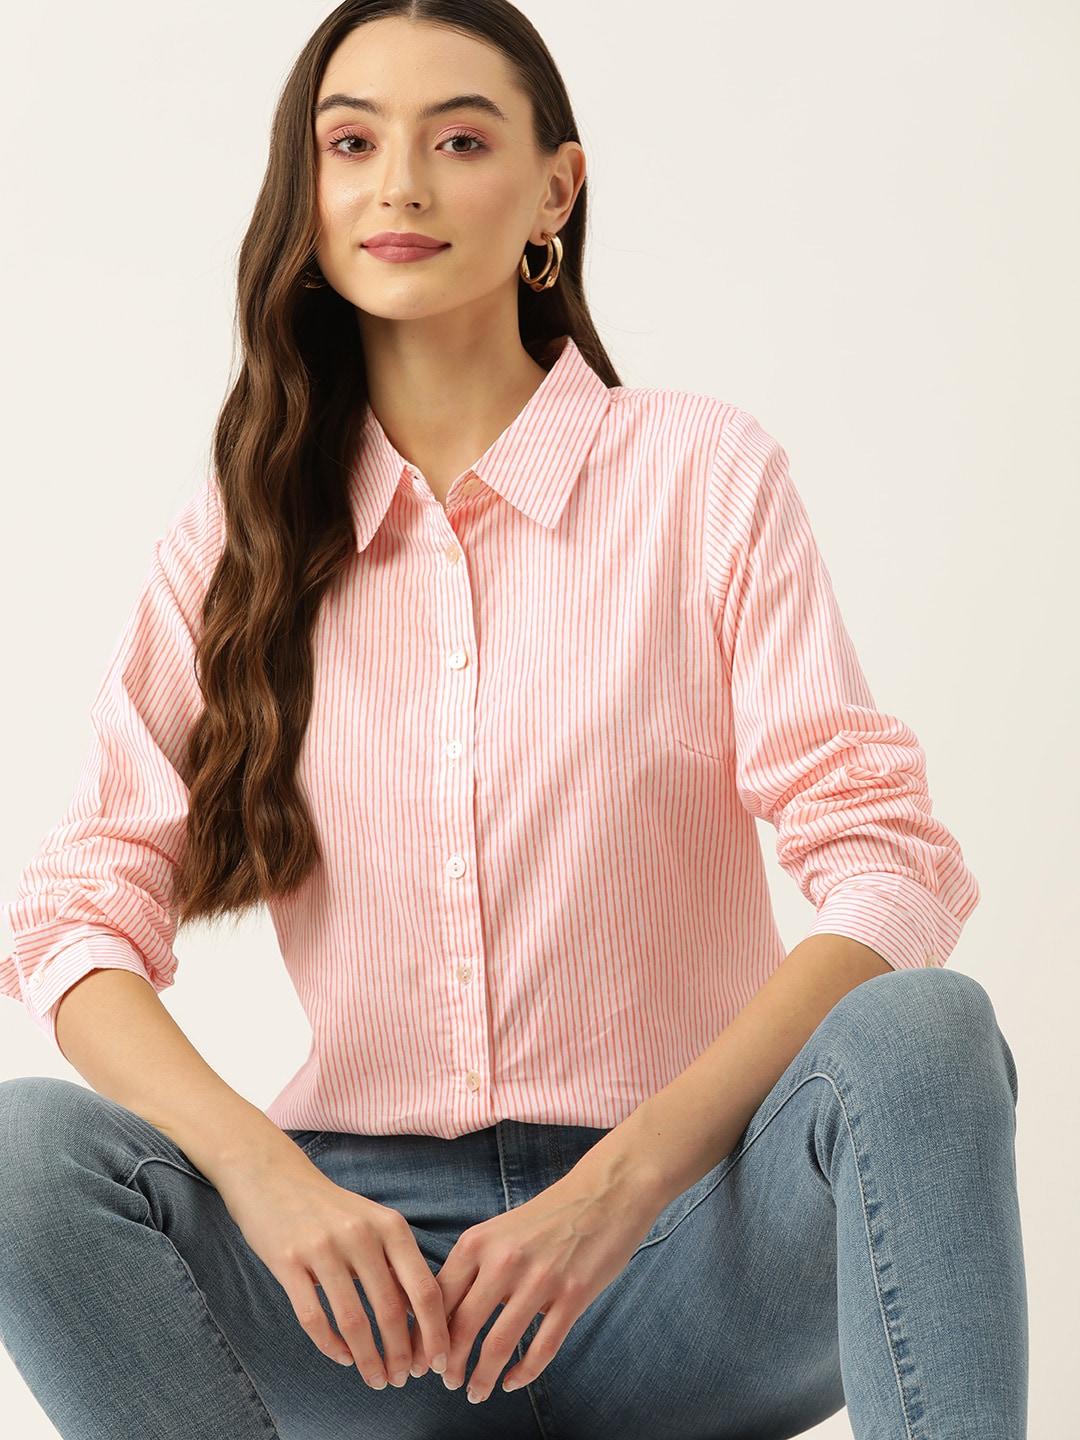 dressberry-women-original-pinstripes-cotton-casual-shirt